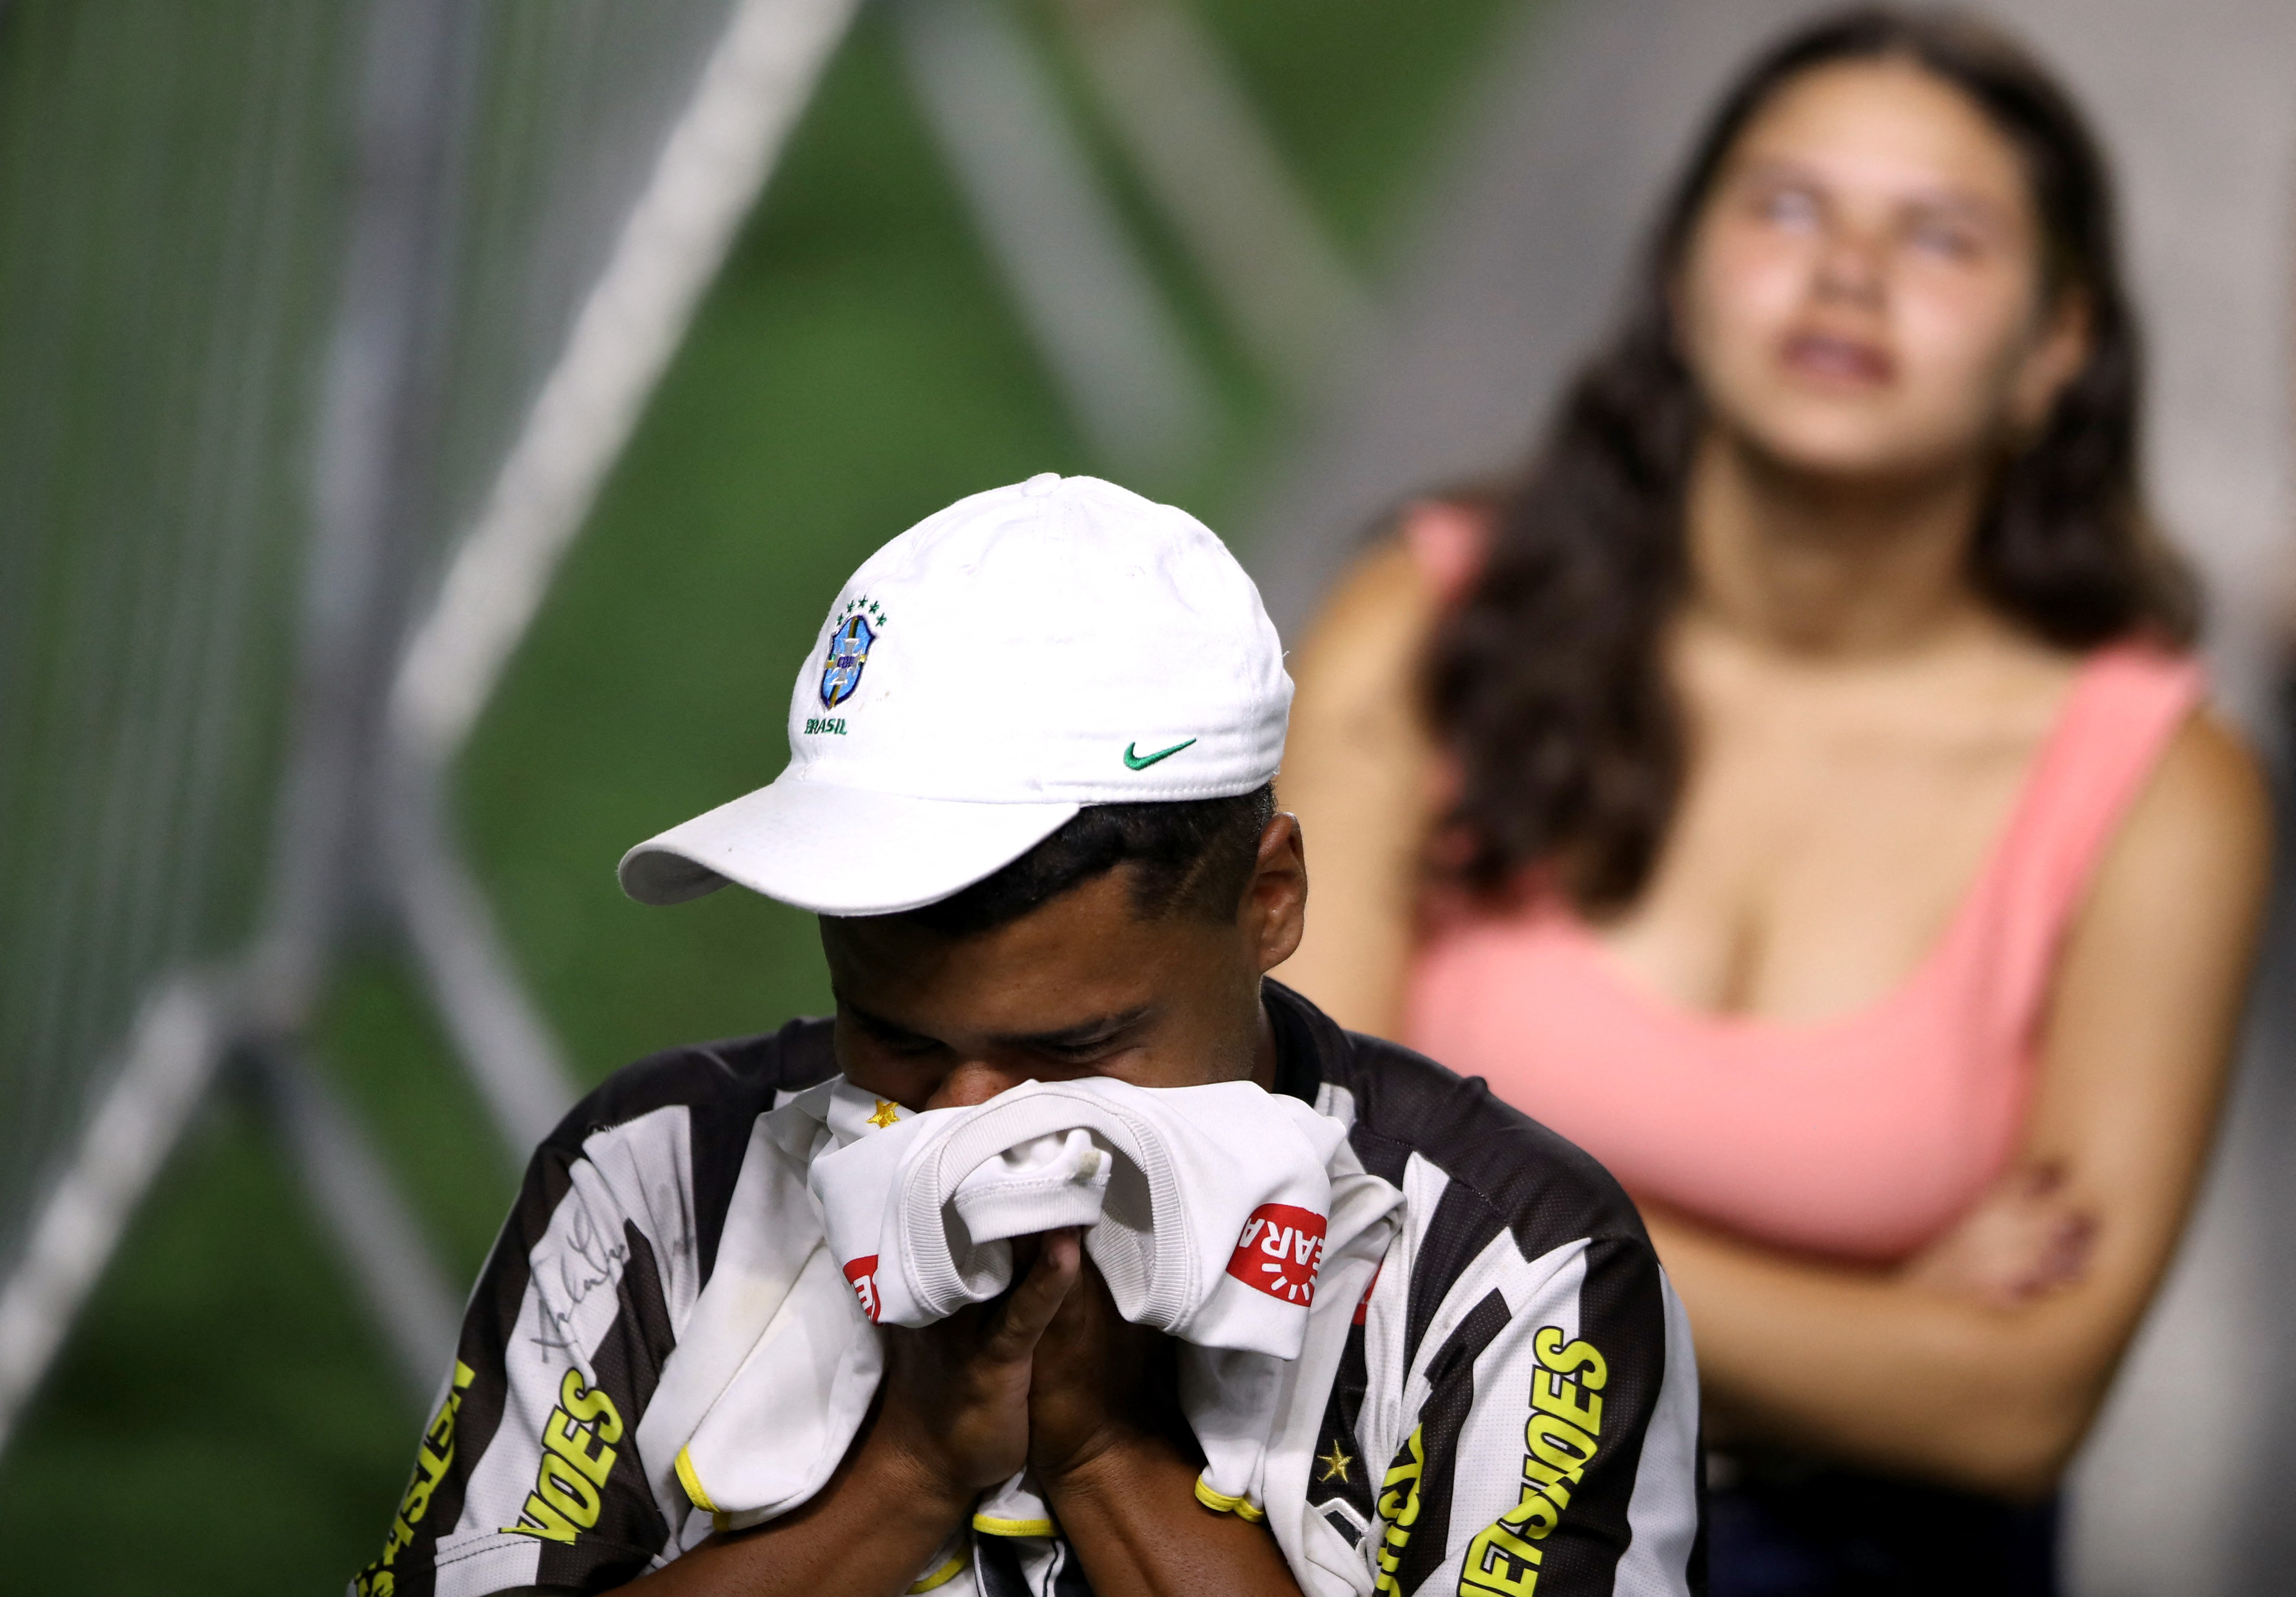 La emoción de los fanáticos luego de ver el cuerpo de Pelé (REUTERS/Carla Carniel)